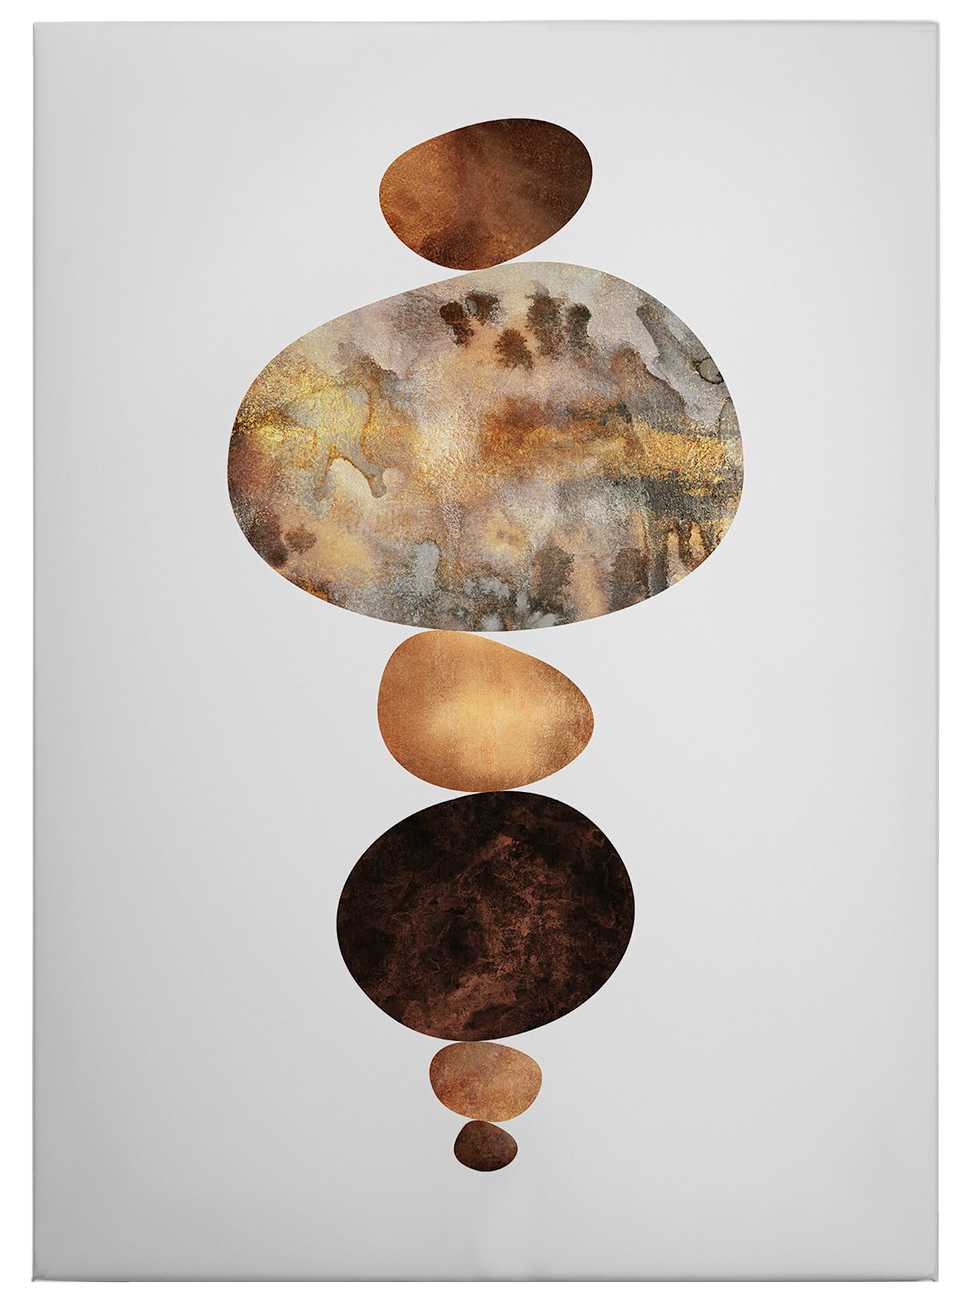             Leinwandbild "Gleichgewicht" von Fredriksson – 0,50 m x 0,70 m
        